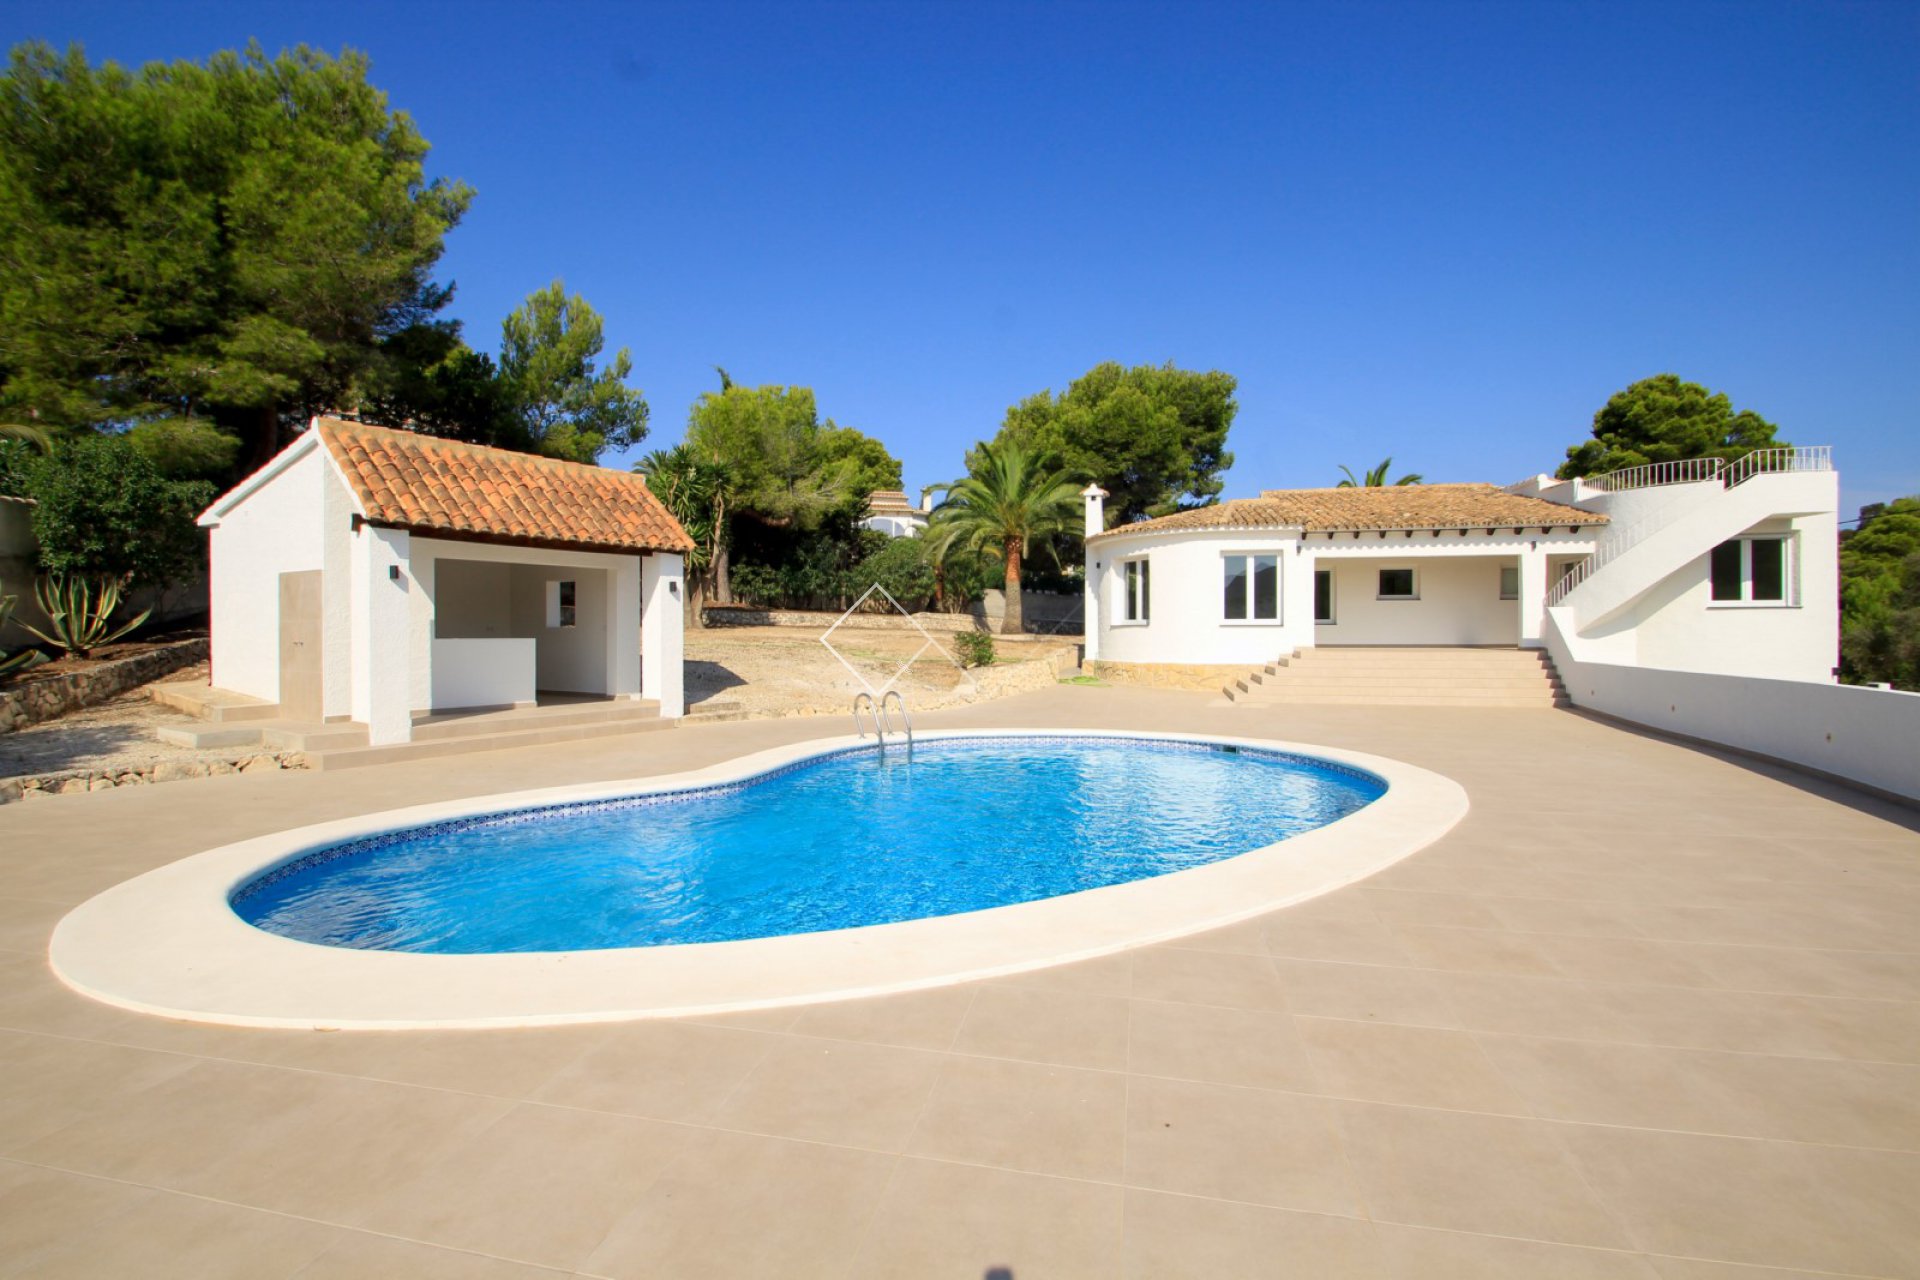 pool terrace and villa - Renovated villa for sale near Moraira village. As new!